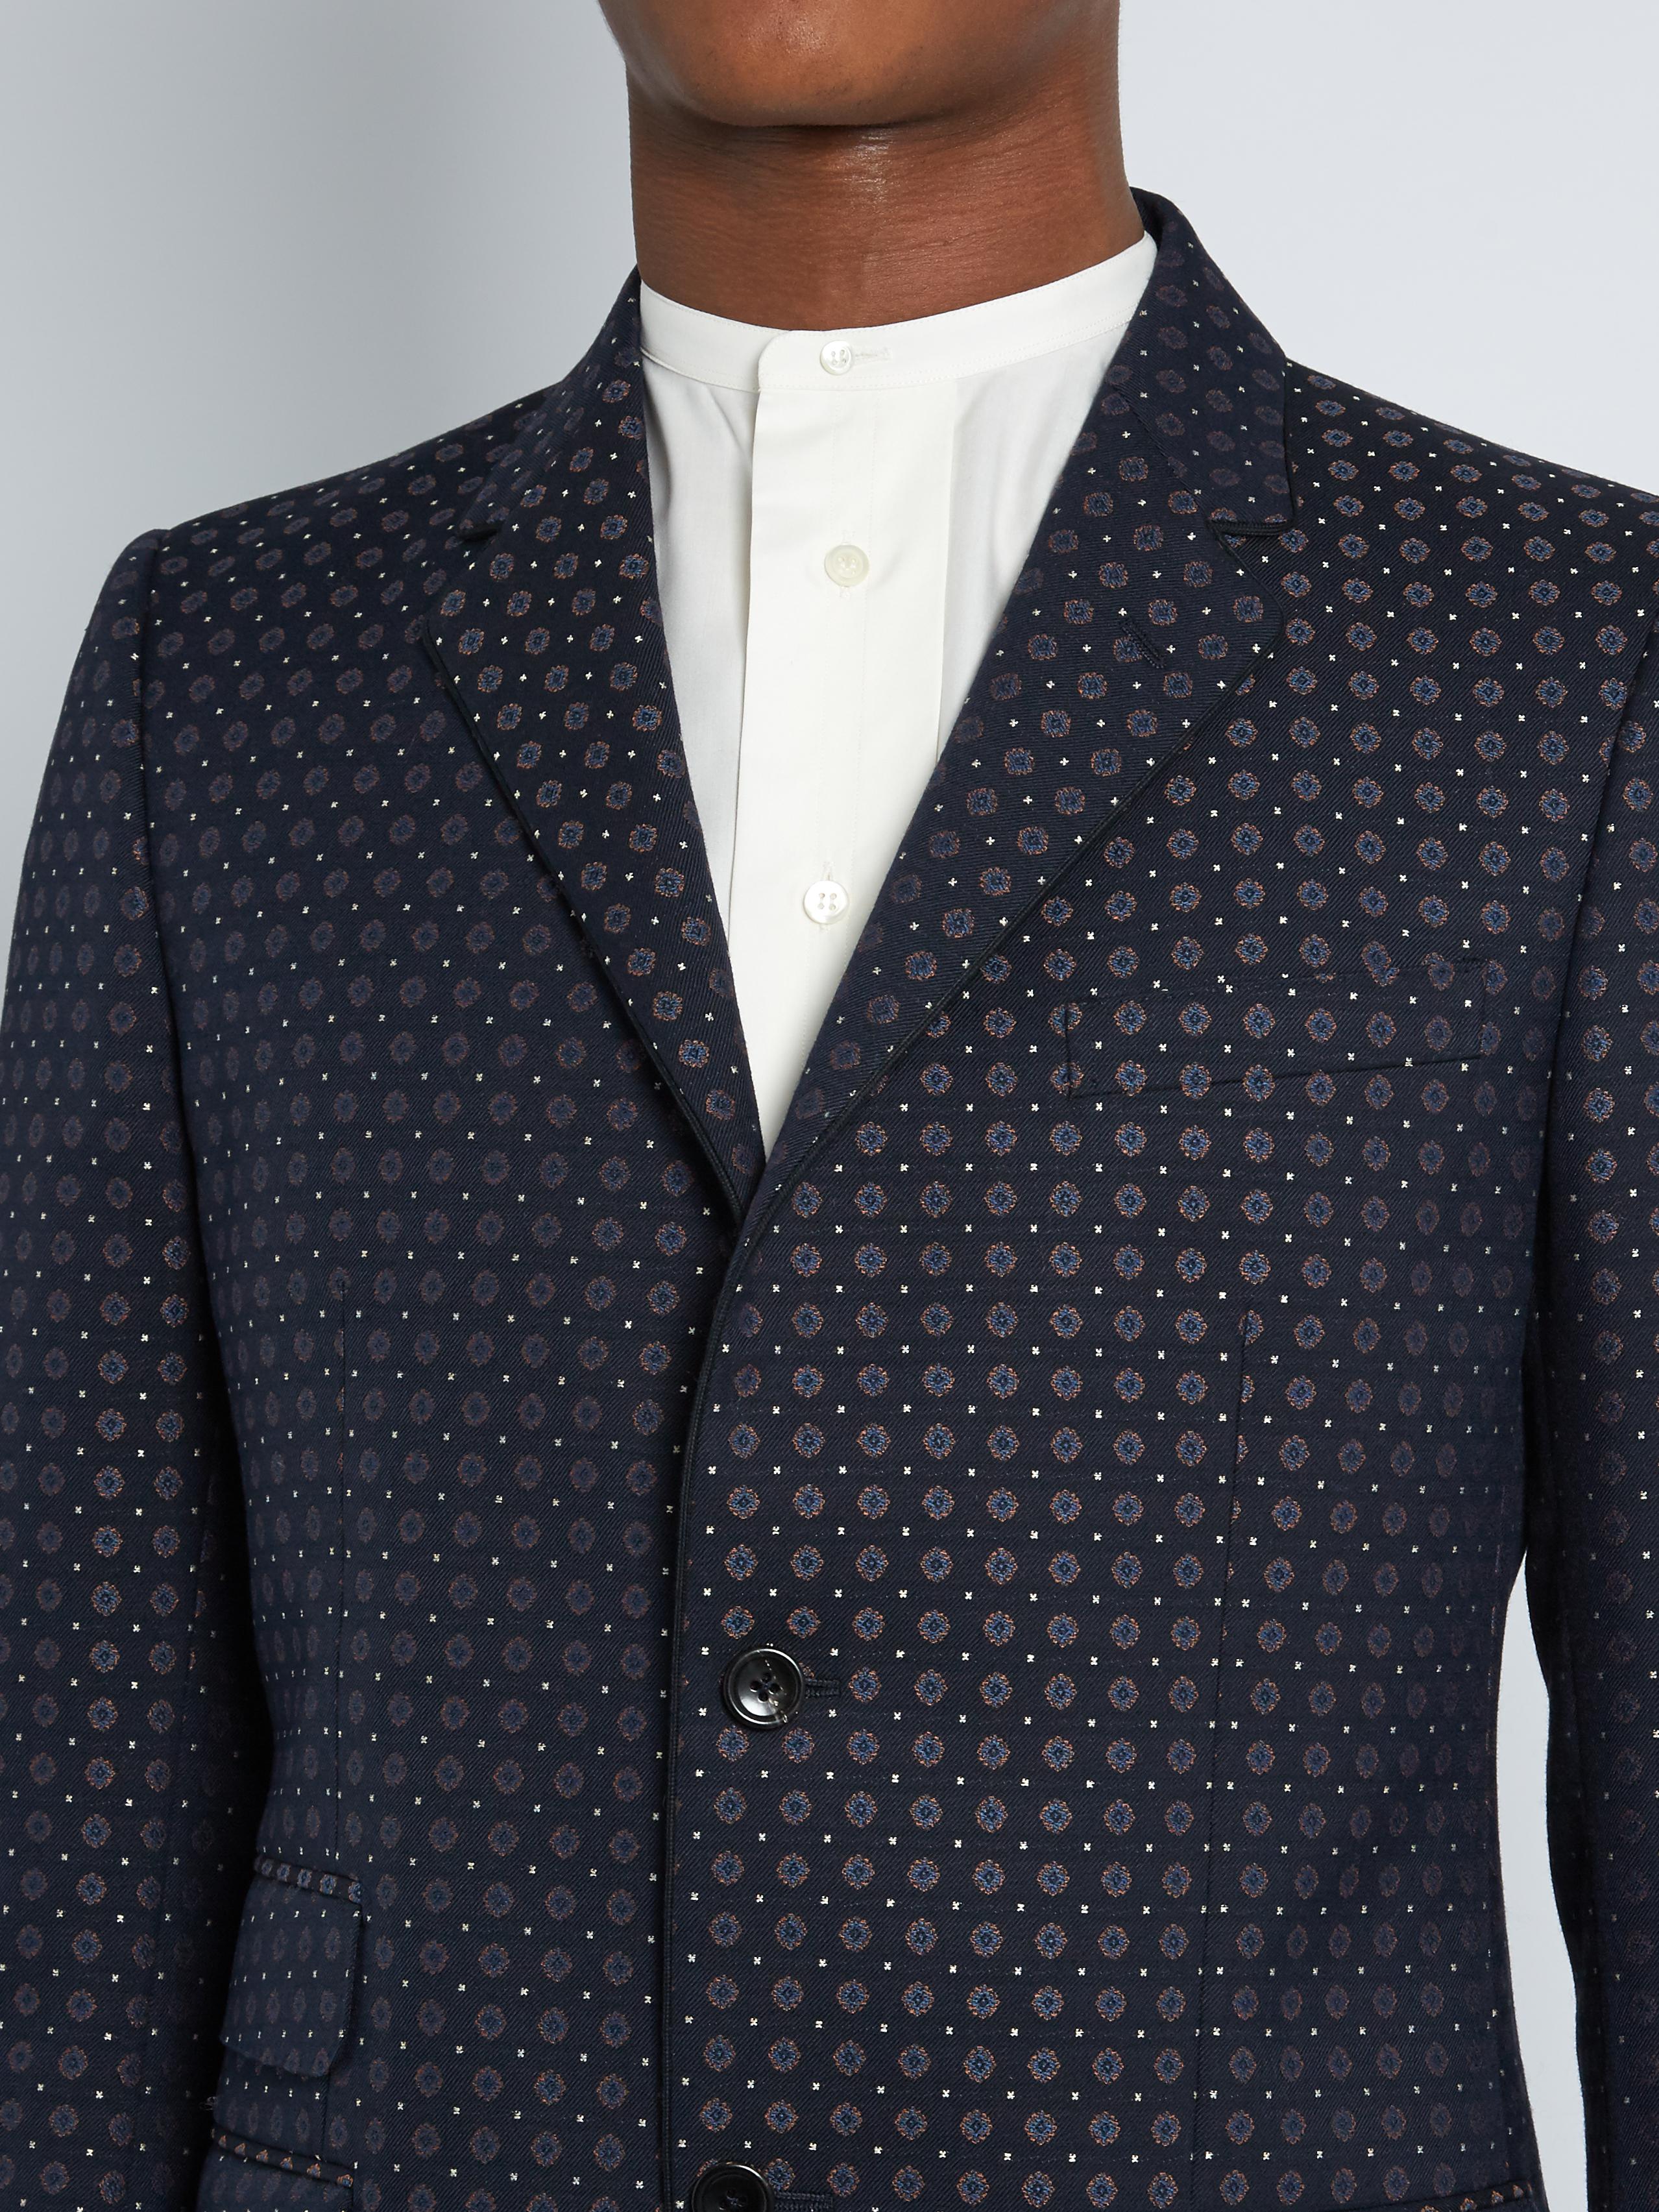 Gucci Monaco Cotton-blend Jacquard Suit in Navy (Blue) for Men - Lyst